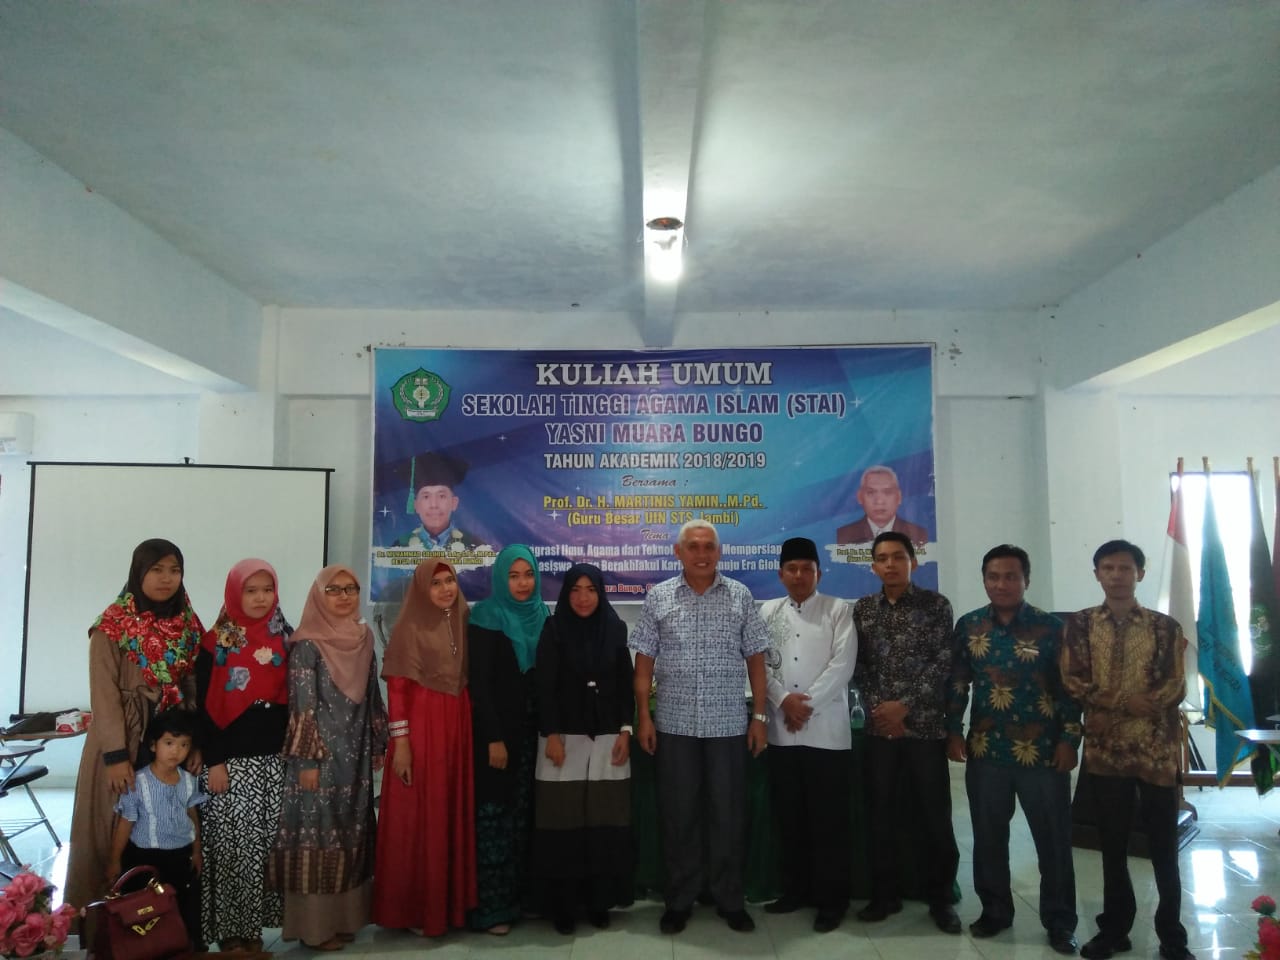 KULIAH UMUM BERSAMA Prof. Dr. H. MARTINIS YAMIN, M.Pd